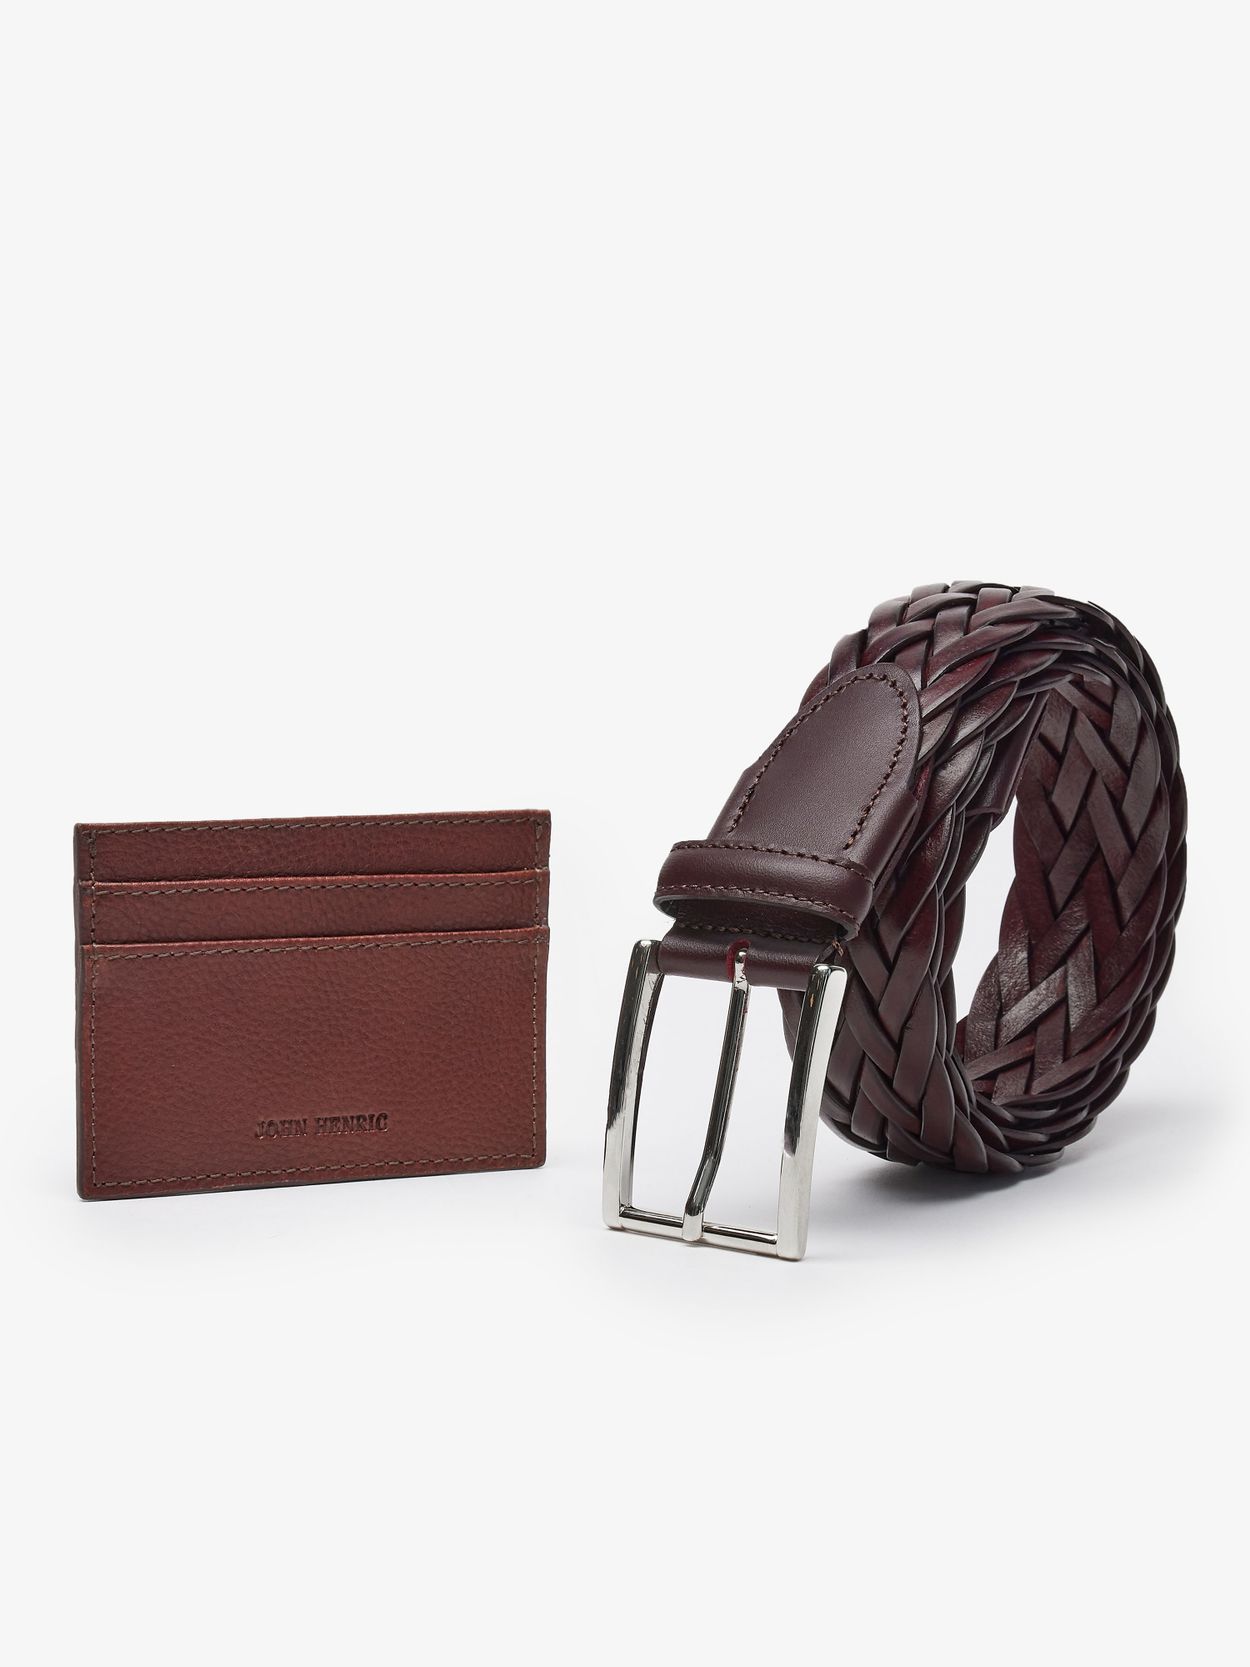 Brown Leather belt & Cardholder